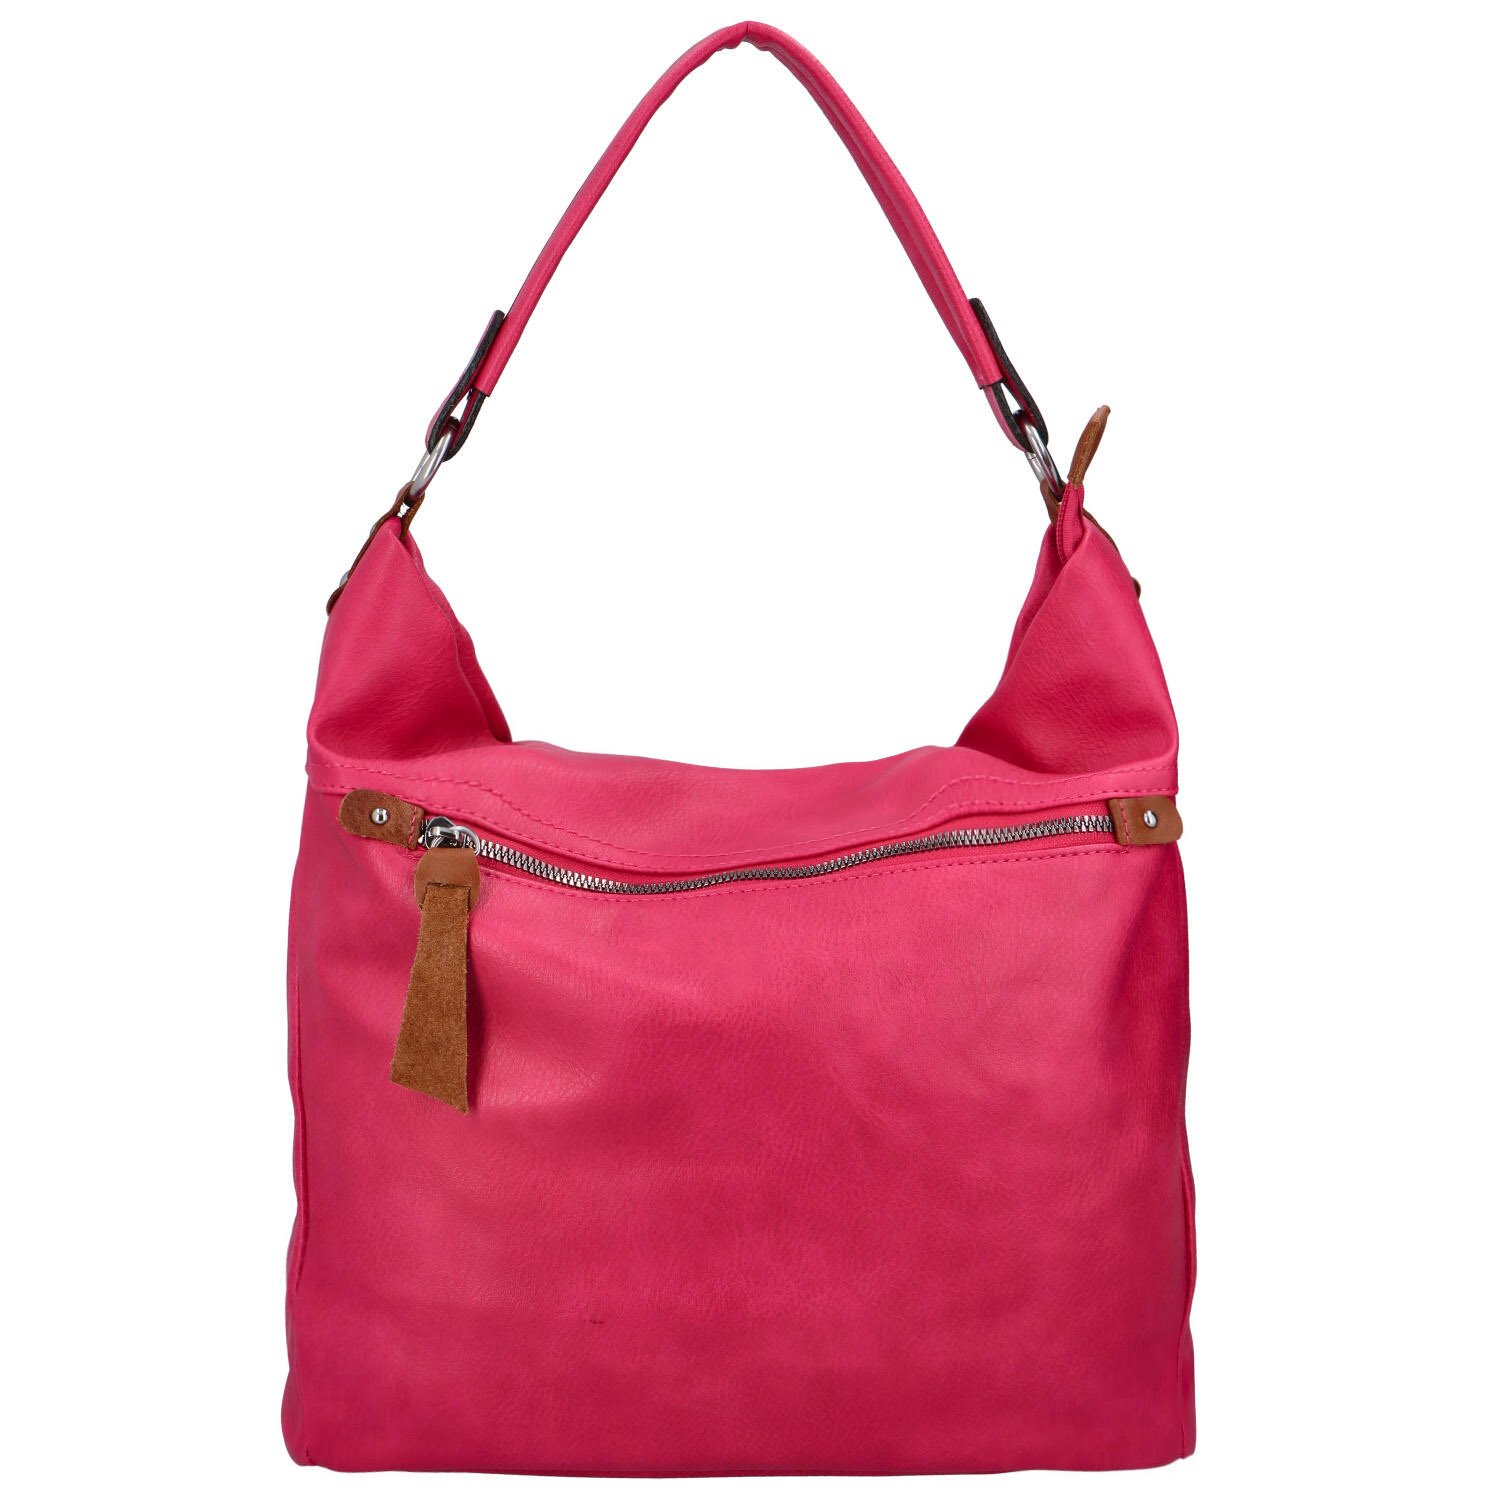 Příjemná dámská koženková taška většího formátu Veronica, růžová.